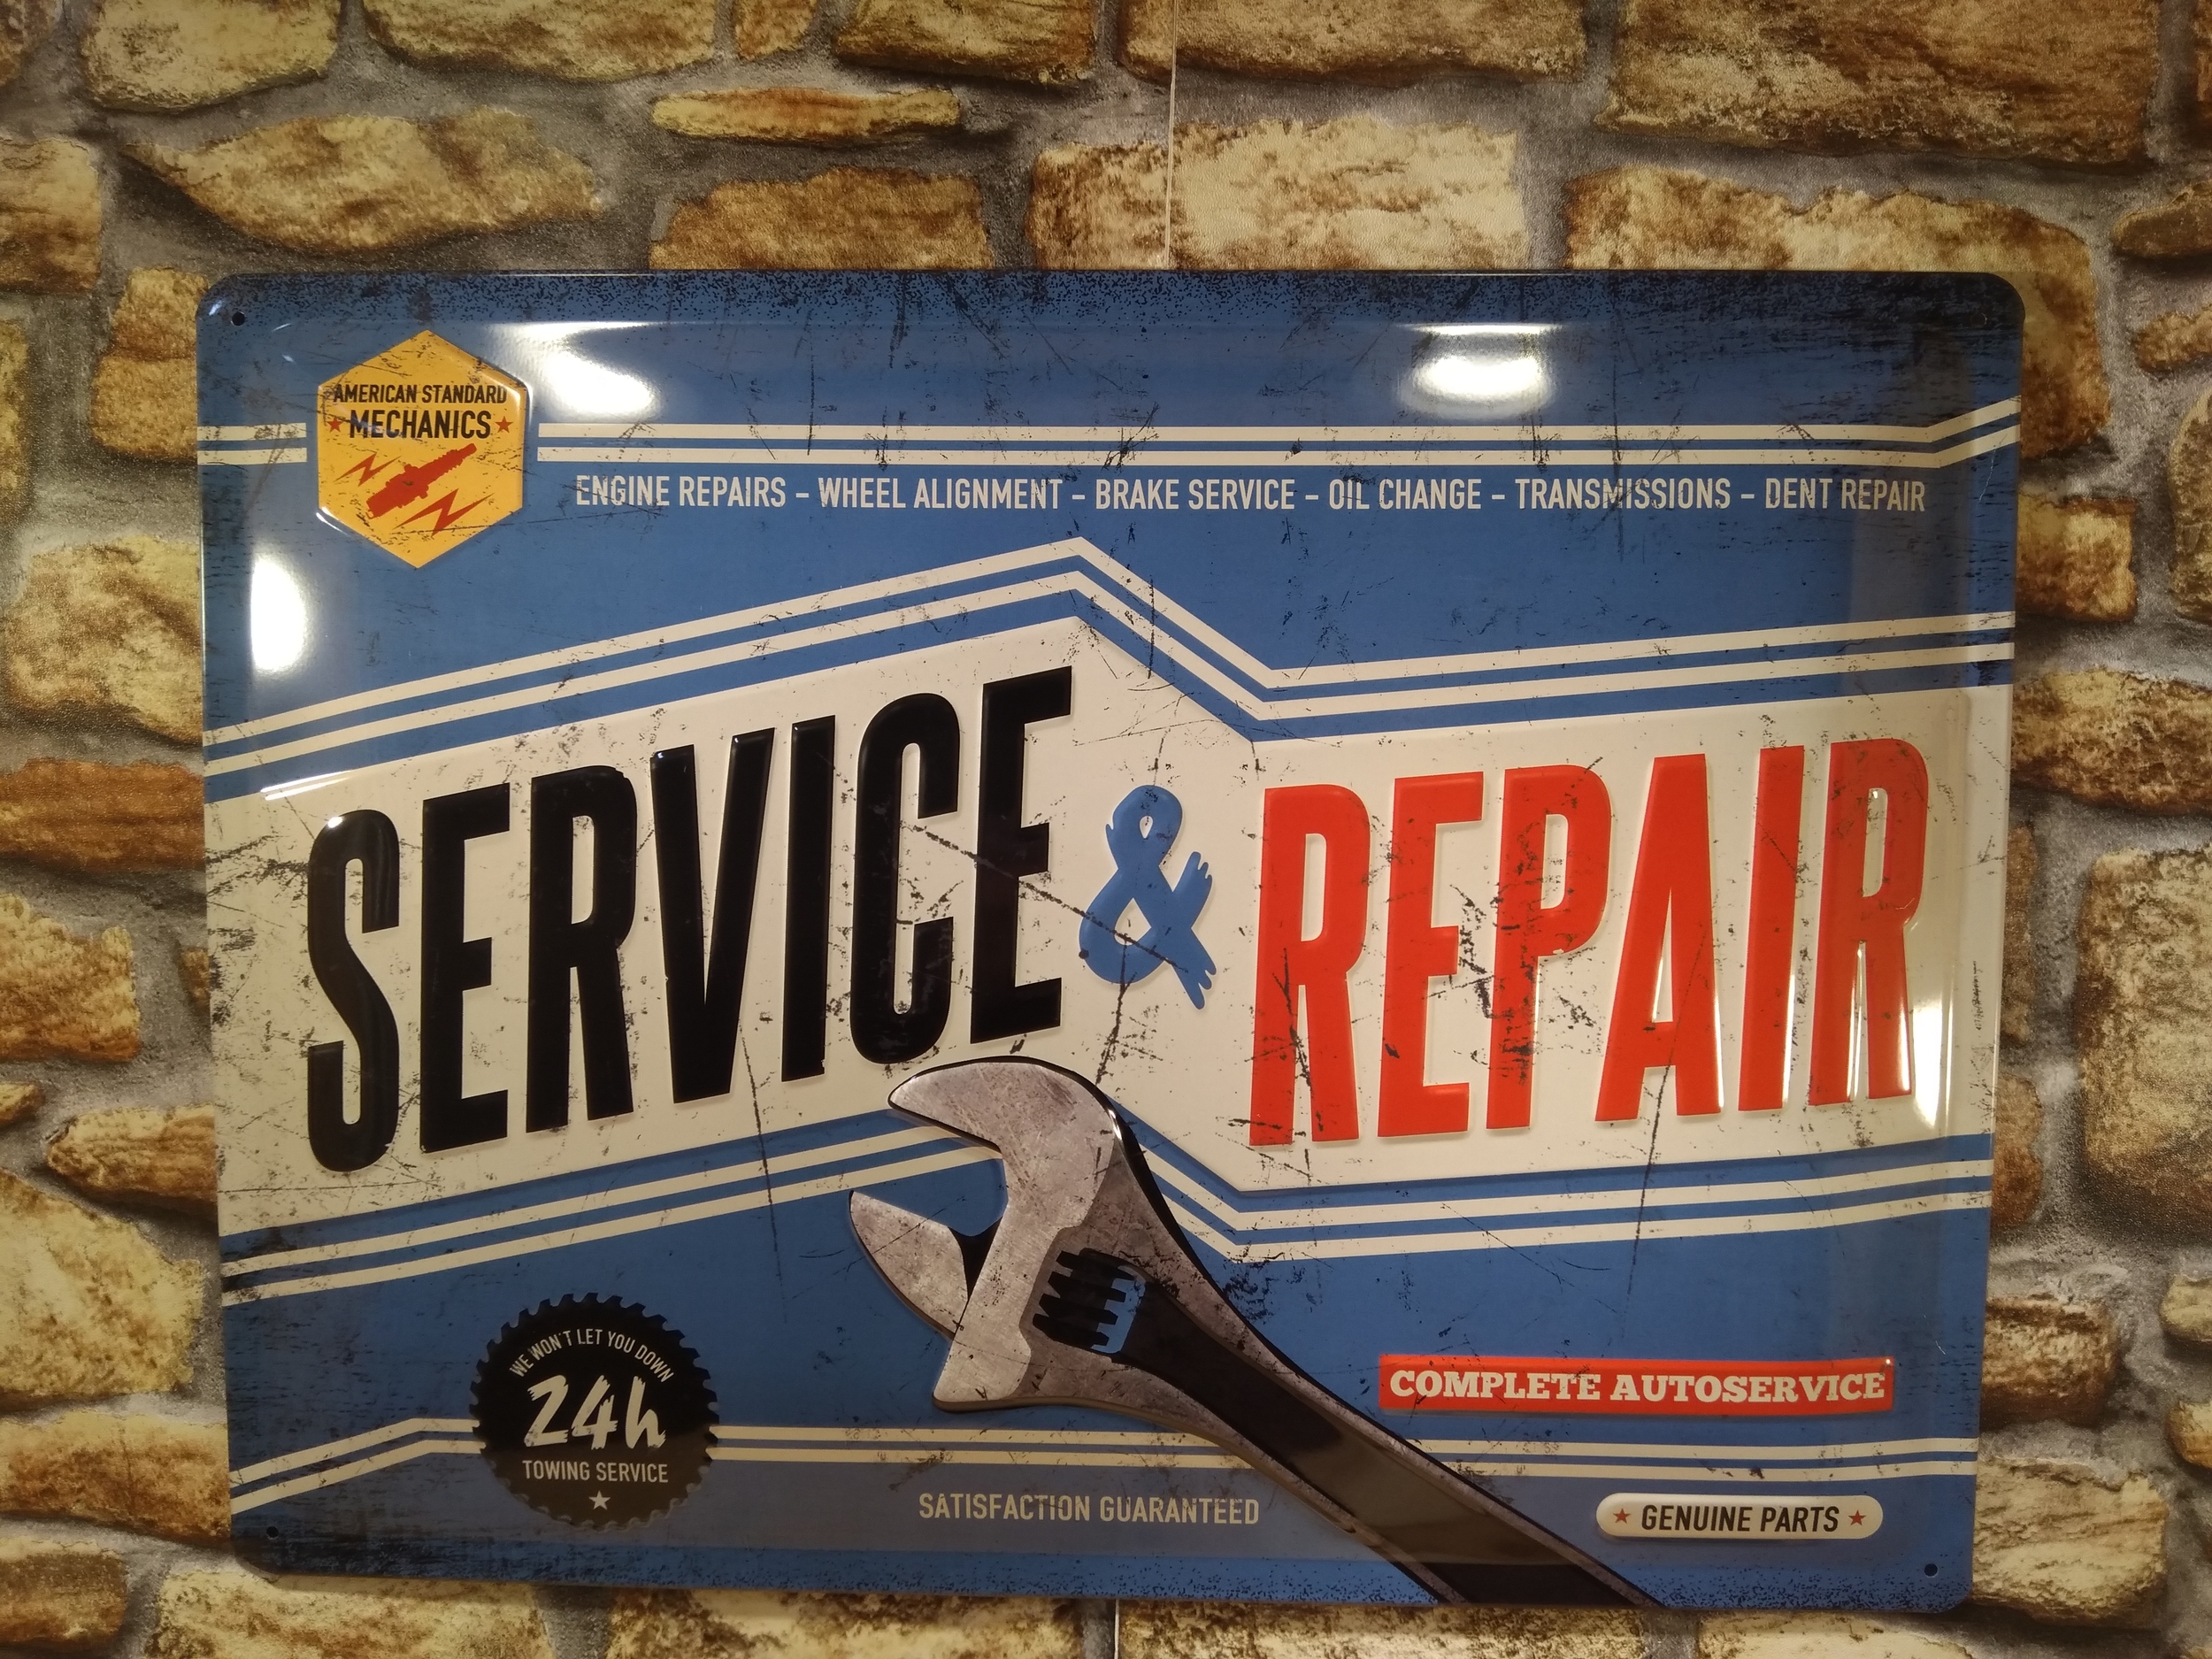 Plaque en Métal Garage Reparation